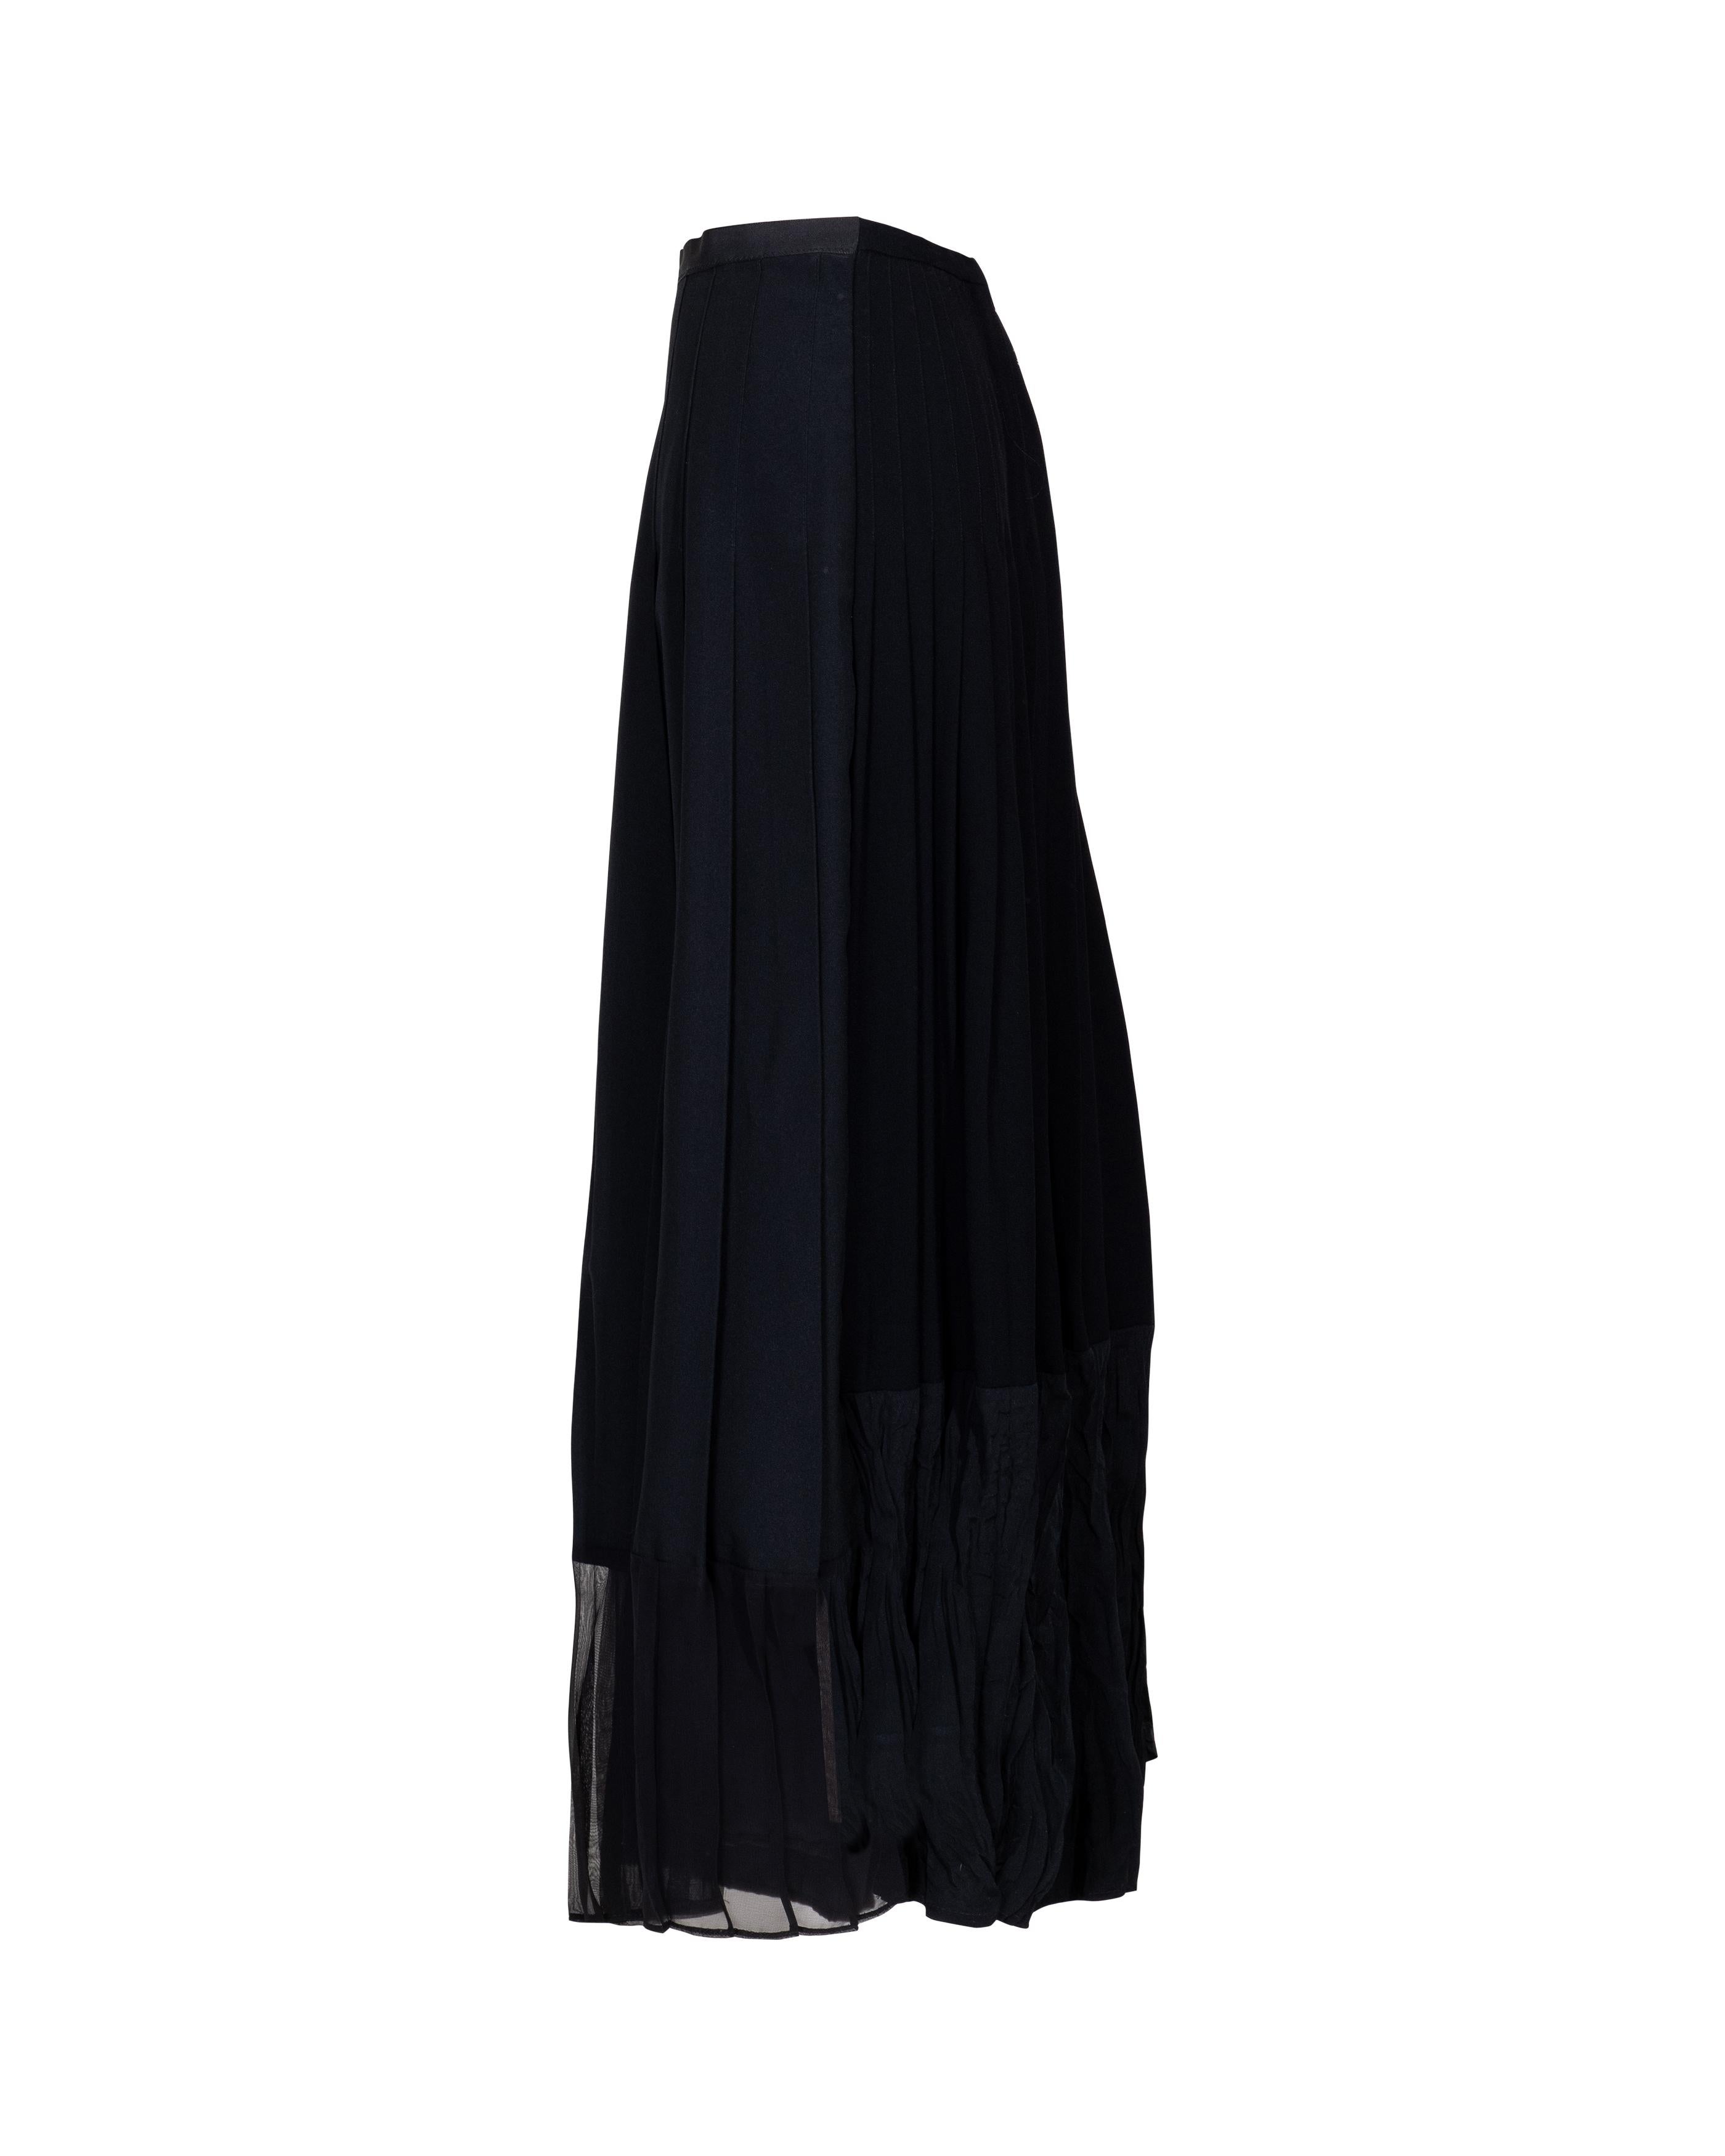 Women's S/S 2001 Maison Martin Margiela One-of-One Black Pleated Artisanal Maxi Skirt For Sale